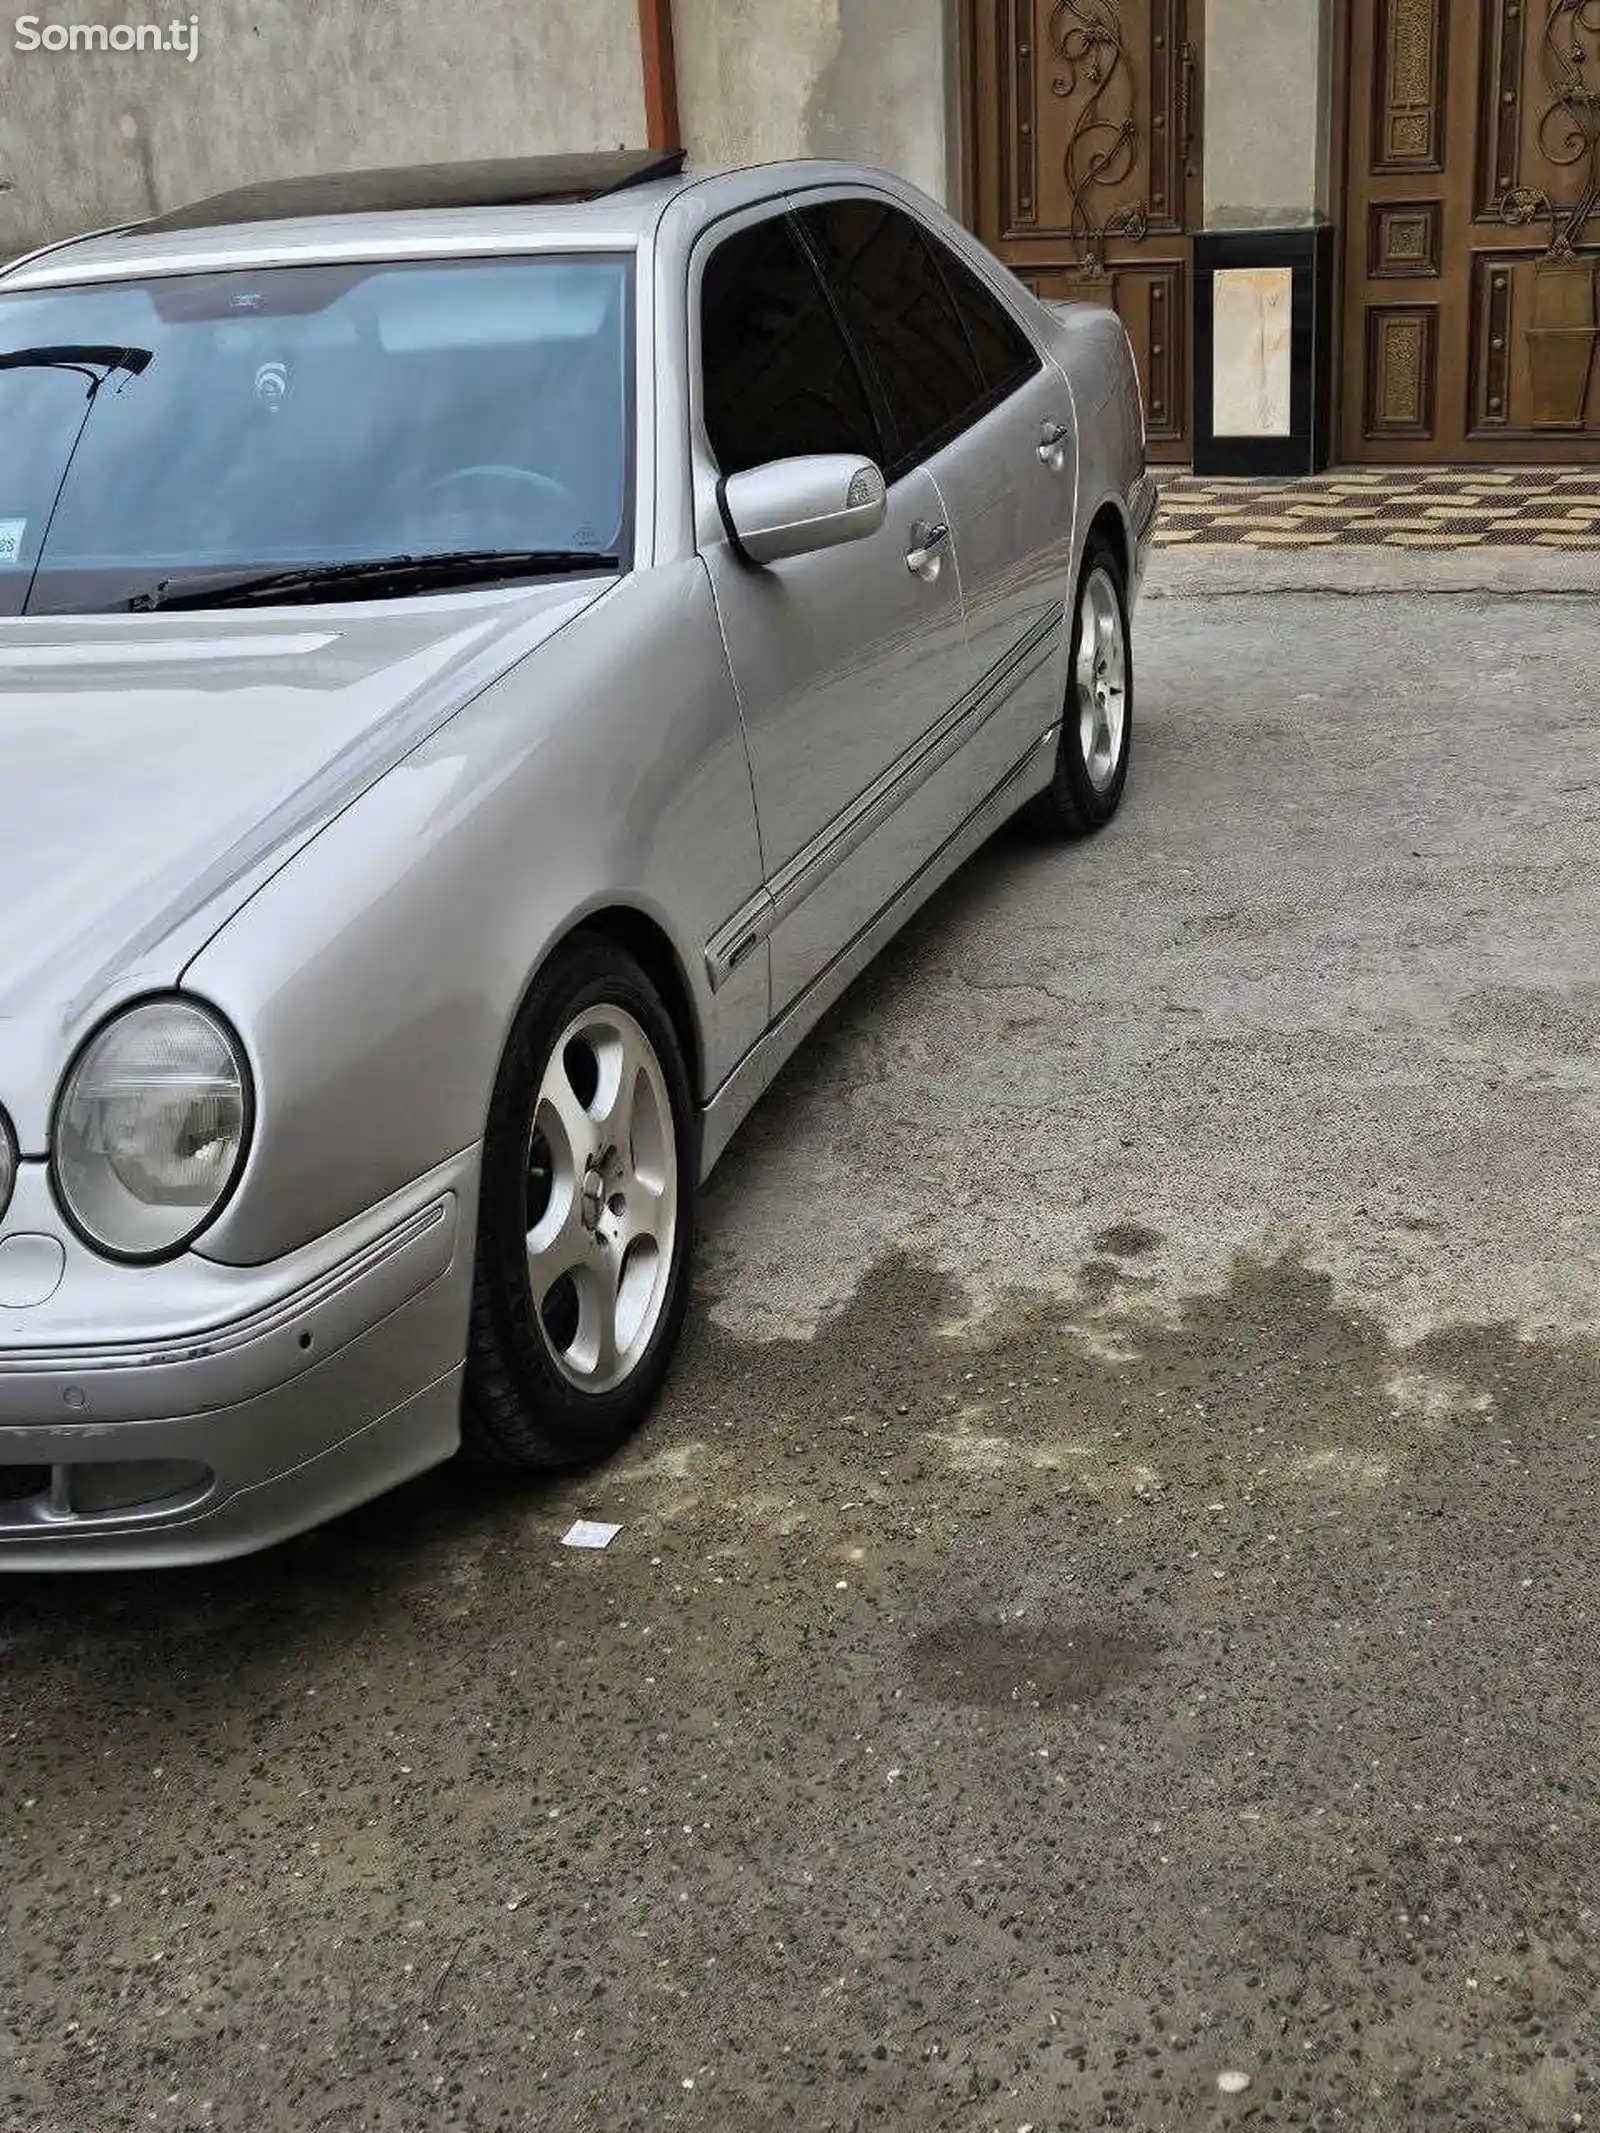 Mercedes-Benz E class, 2000-2